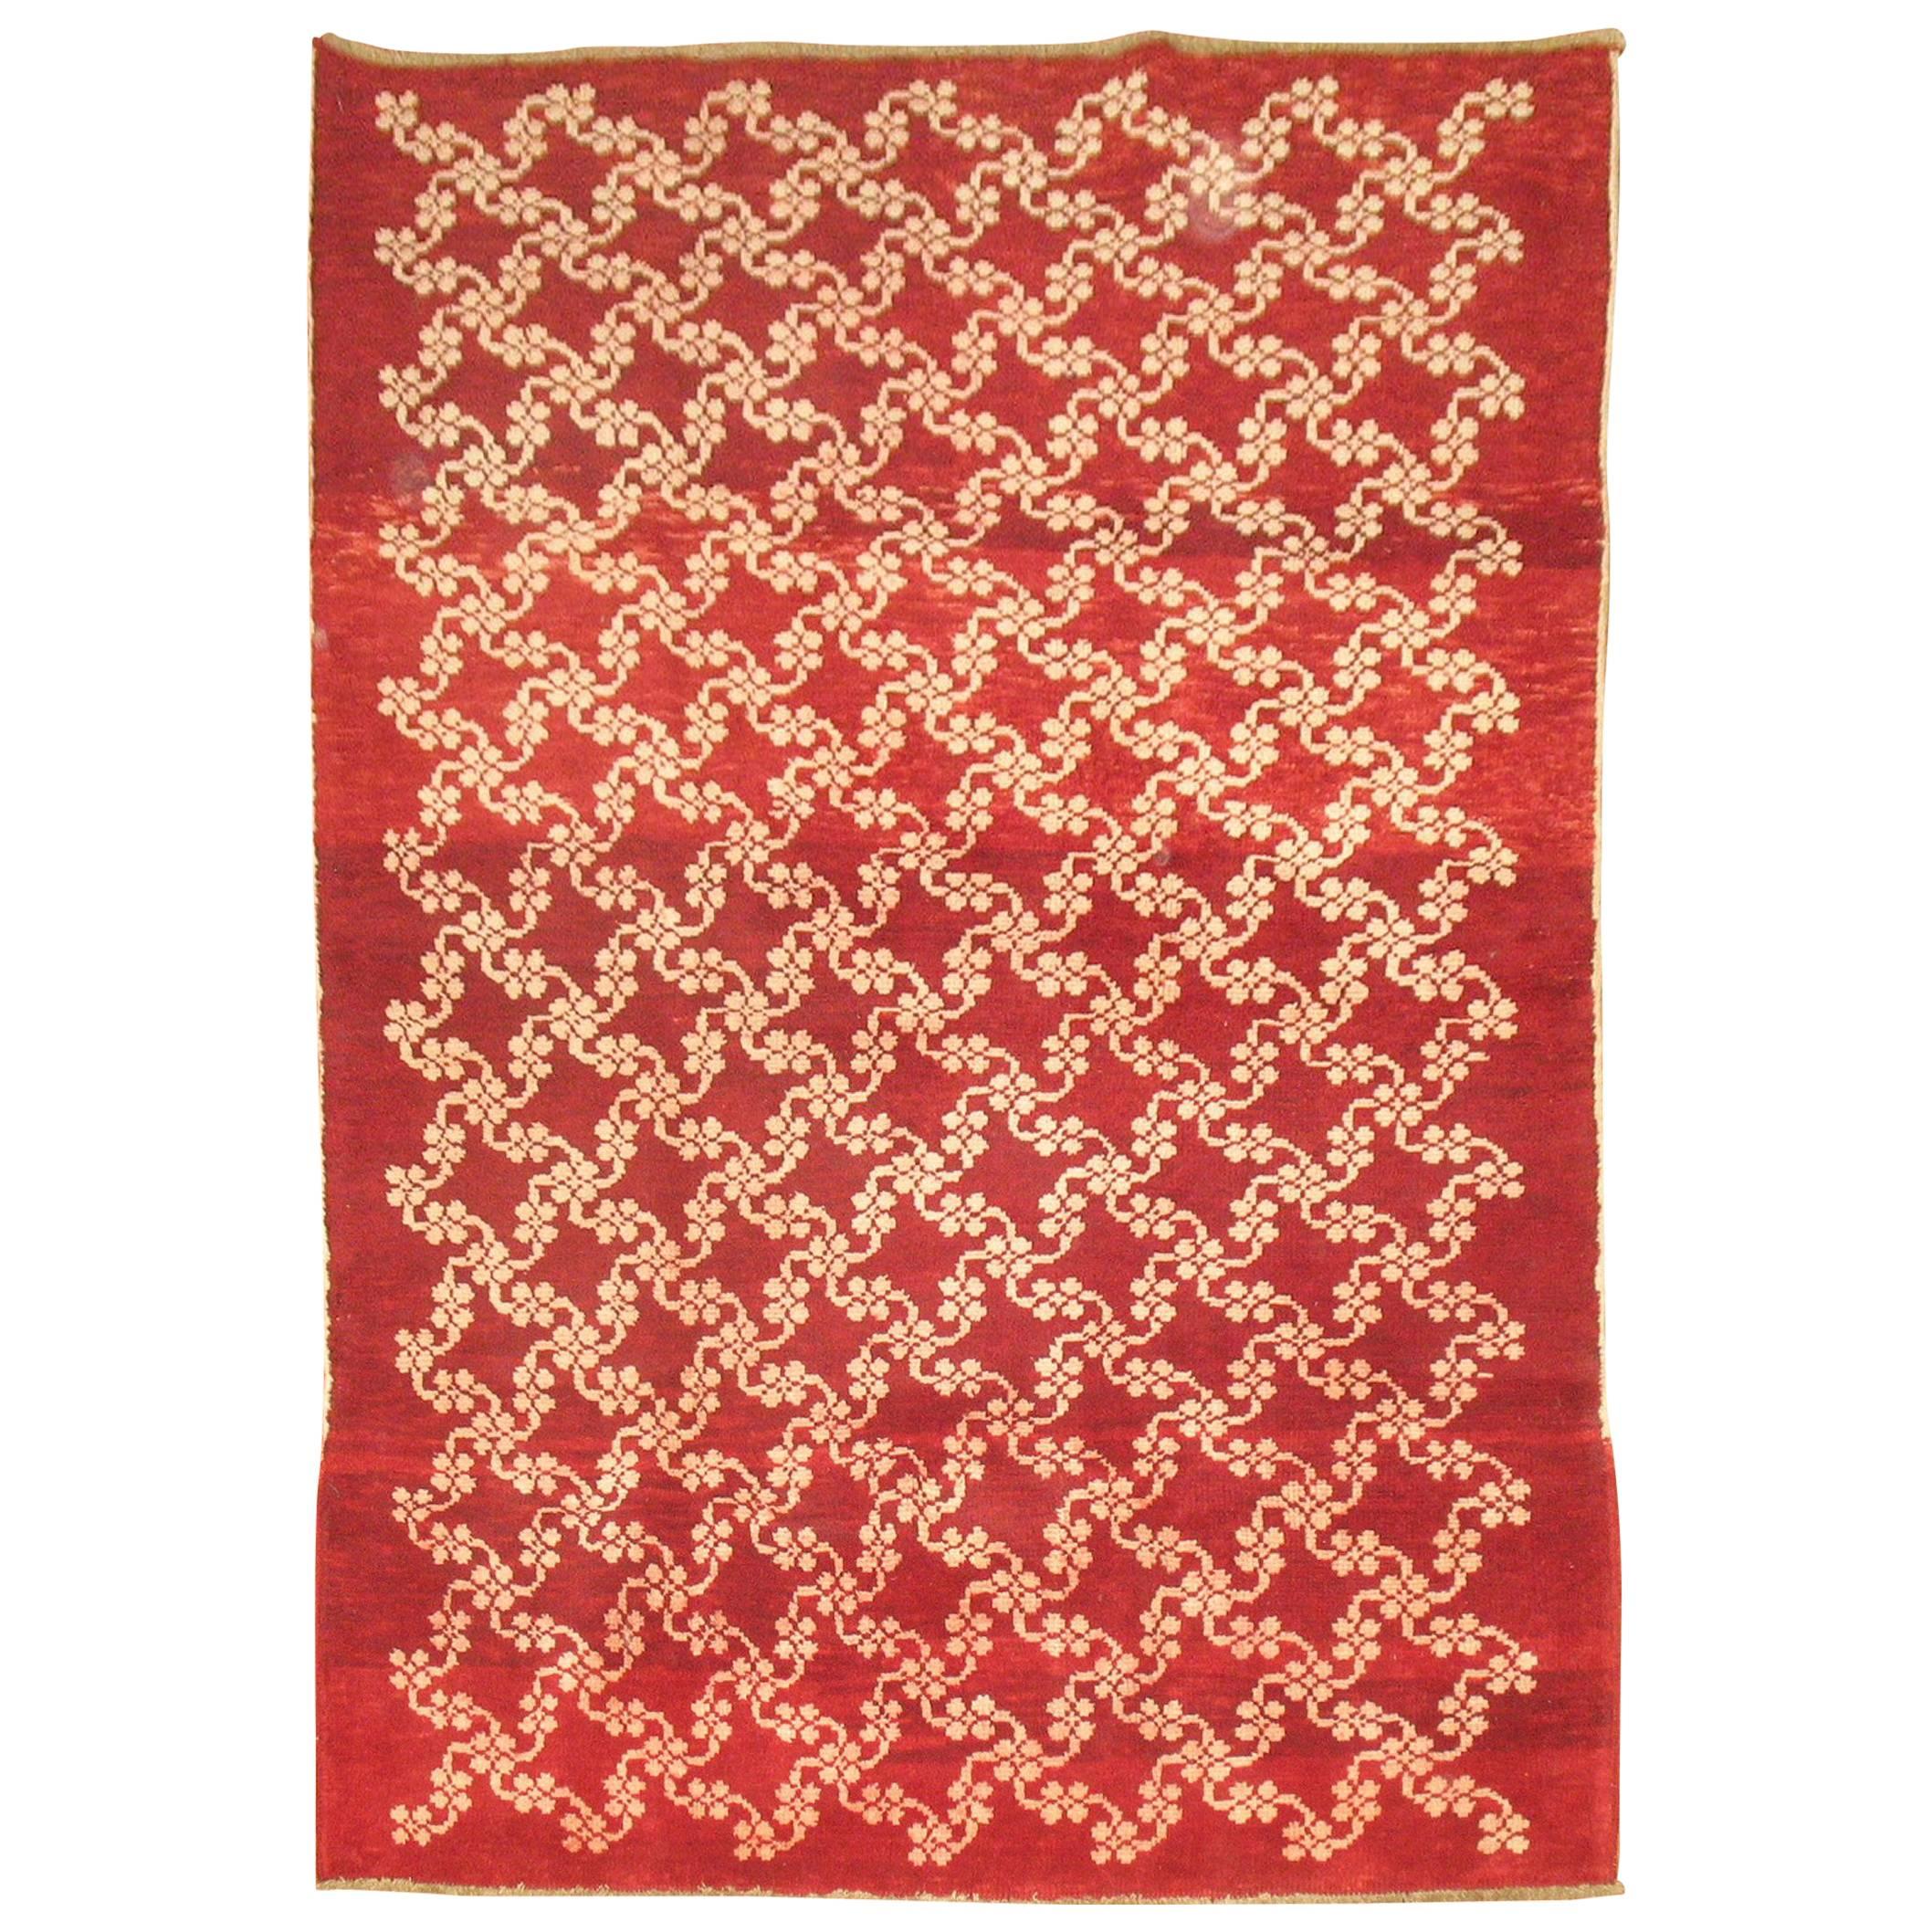 Chinese Red Turkish Konya Carpet